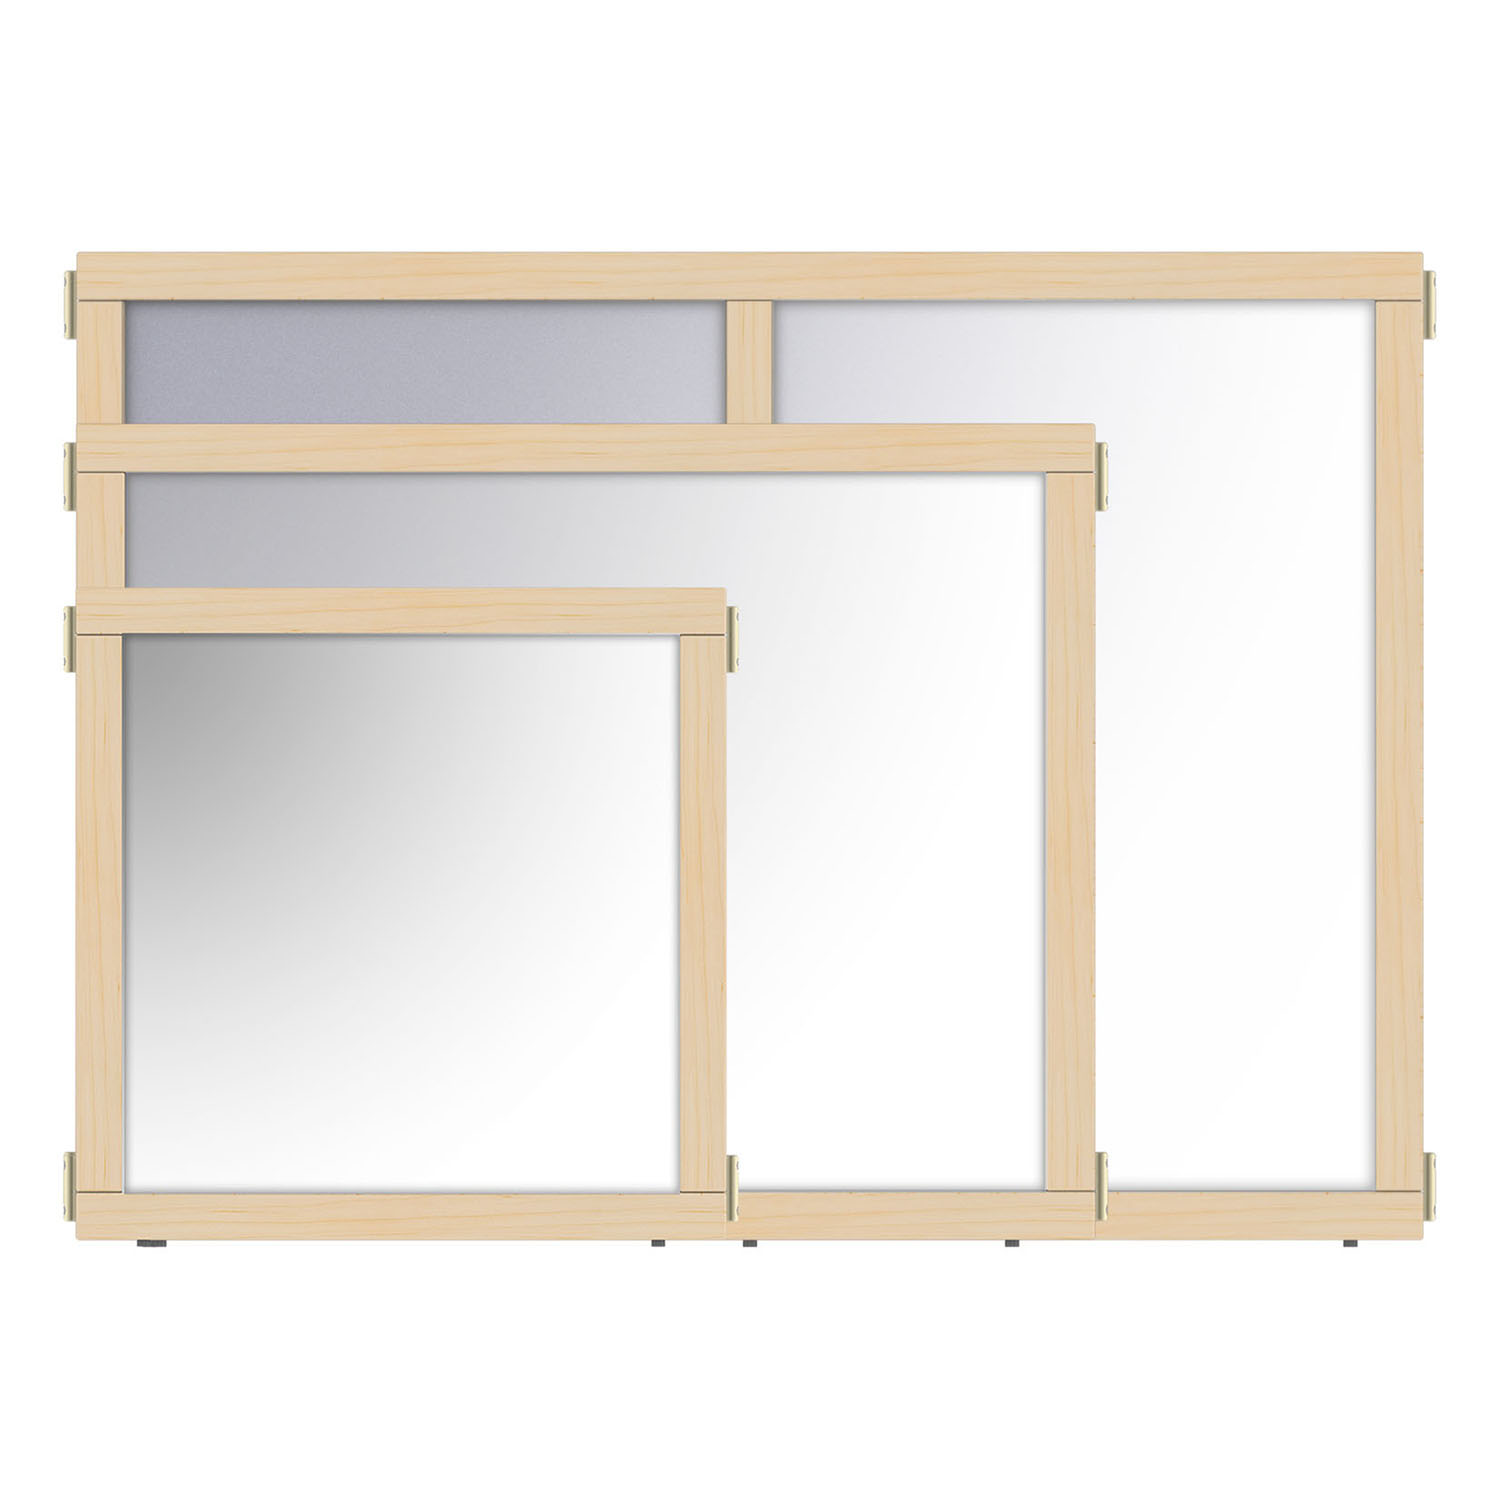 KYDZ Suite® Mirror Panel